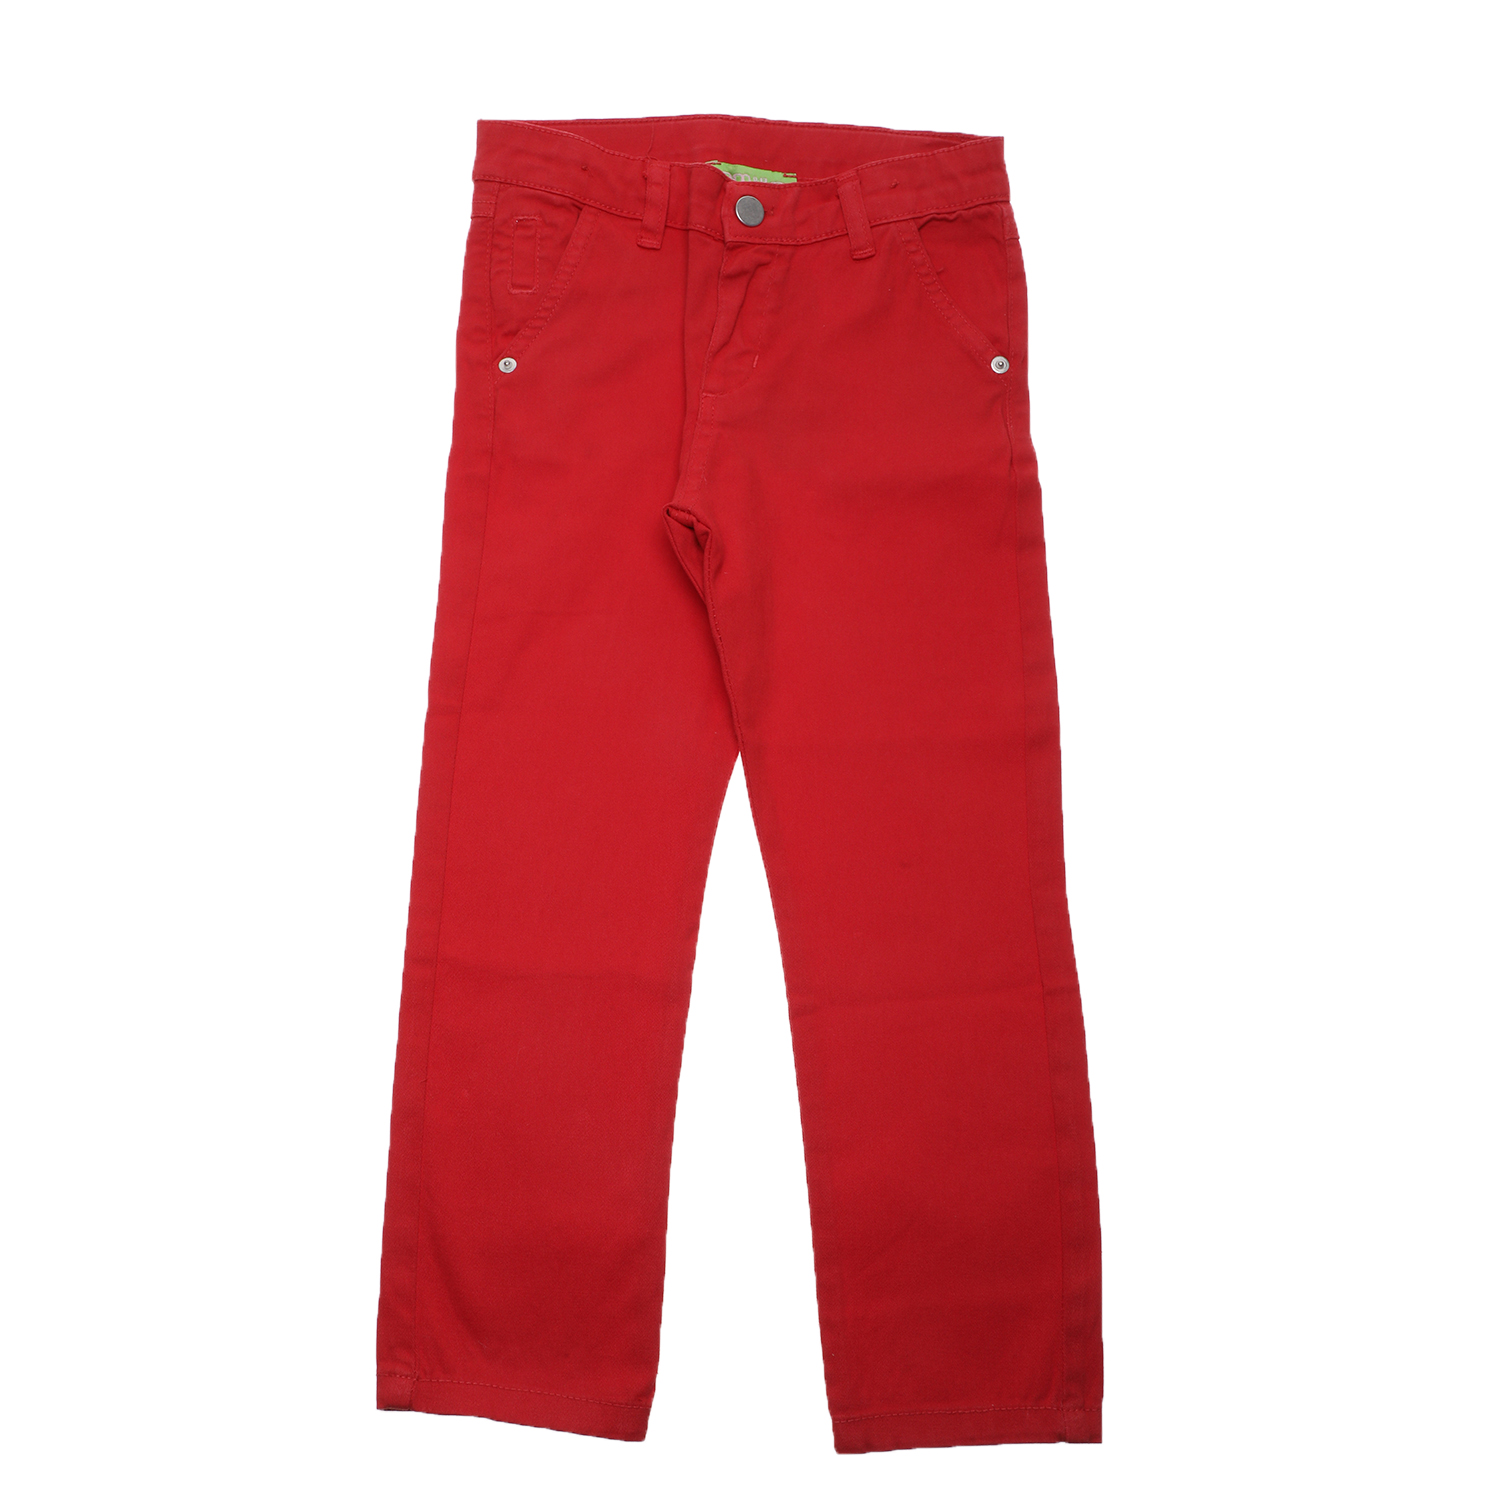 Παιδικά/Boys/Ρούχα/Παντελόνια SAM 0-13 - Παιδικό chino παντελόνι SAM 0-13 κόκκινο